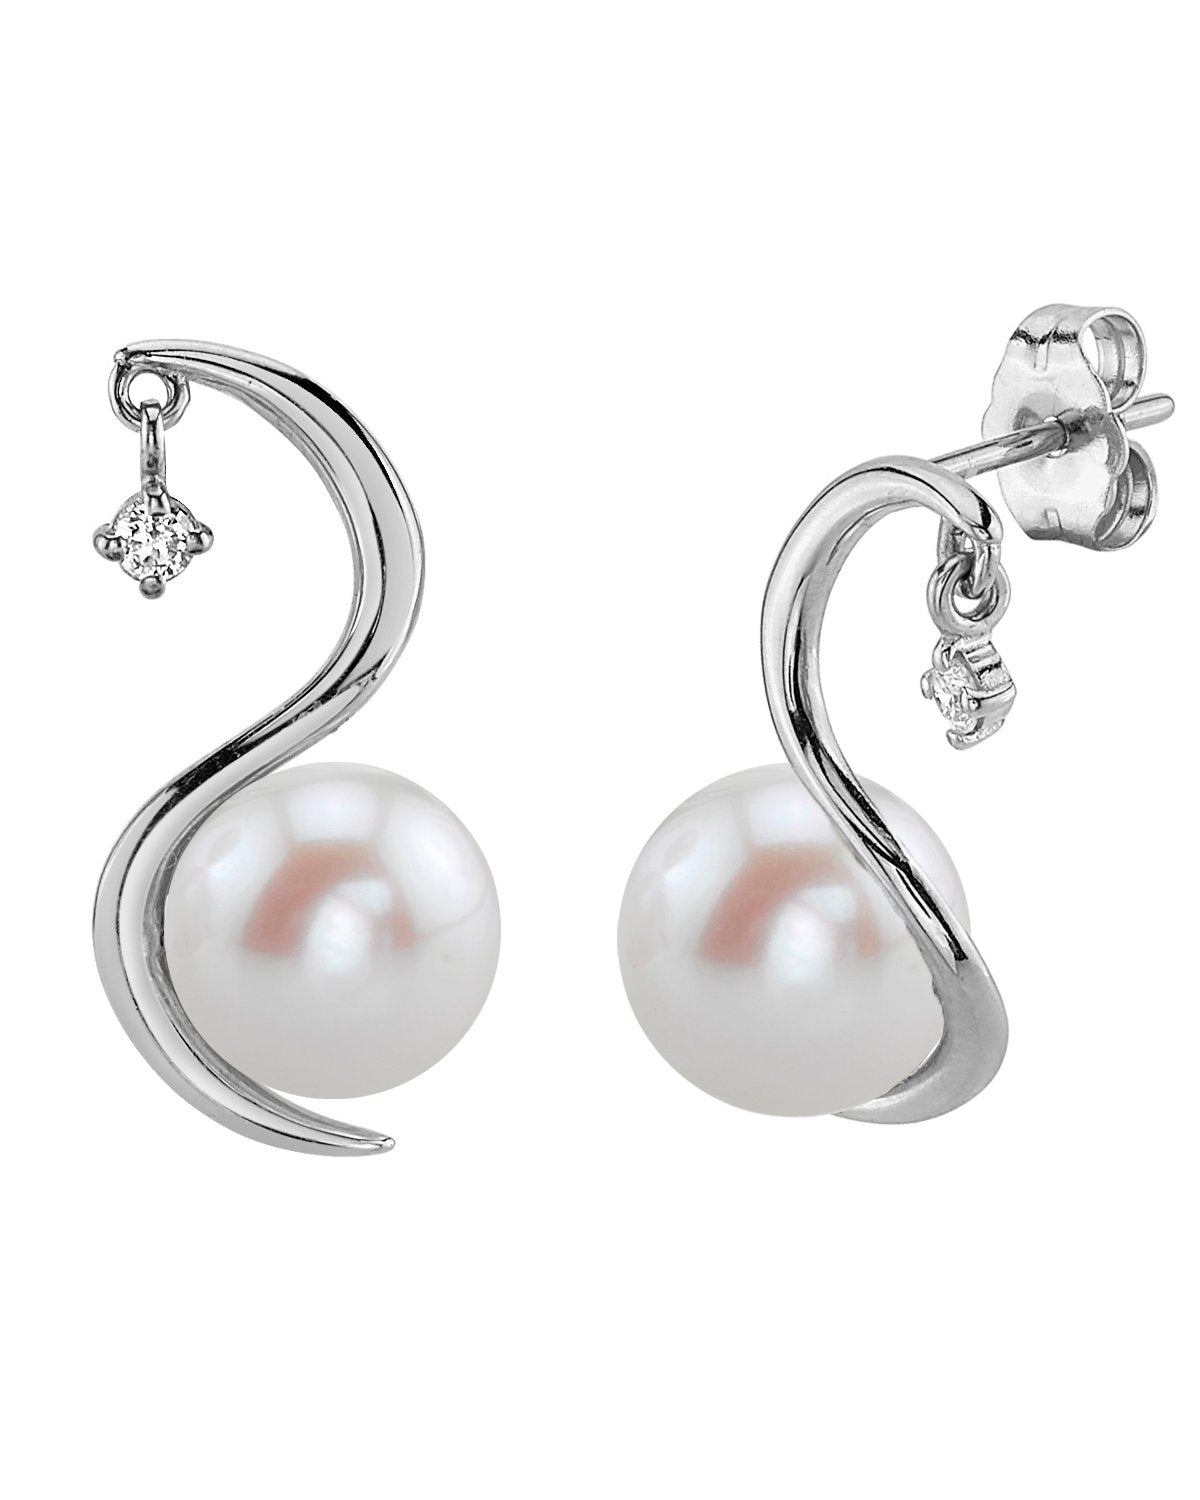 DOGWOOD Freshwater Pearl Stud Earrings Round Pearl Earrings Eco Friendly  Jewelry Best Gifts for Her - Etsy | Round pearl earrings, Bridal jewelry,  Bridal earrings